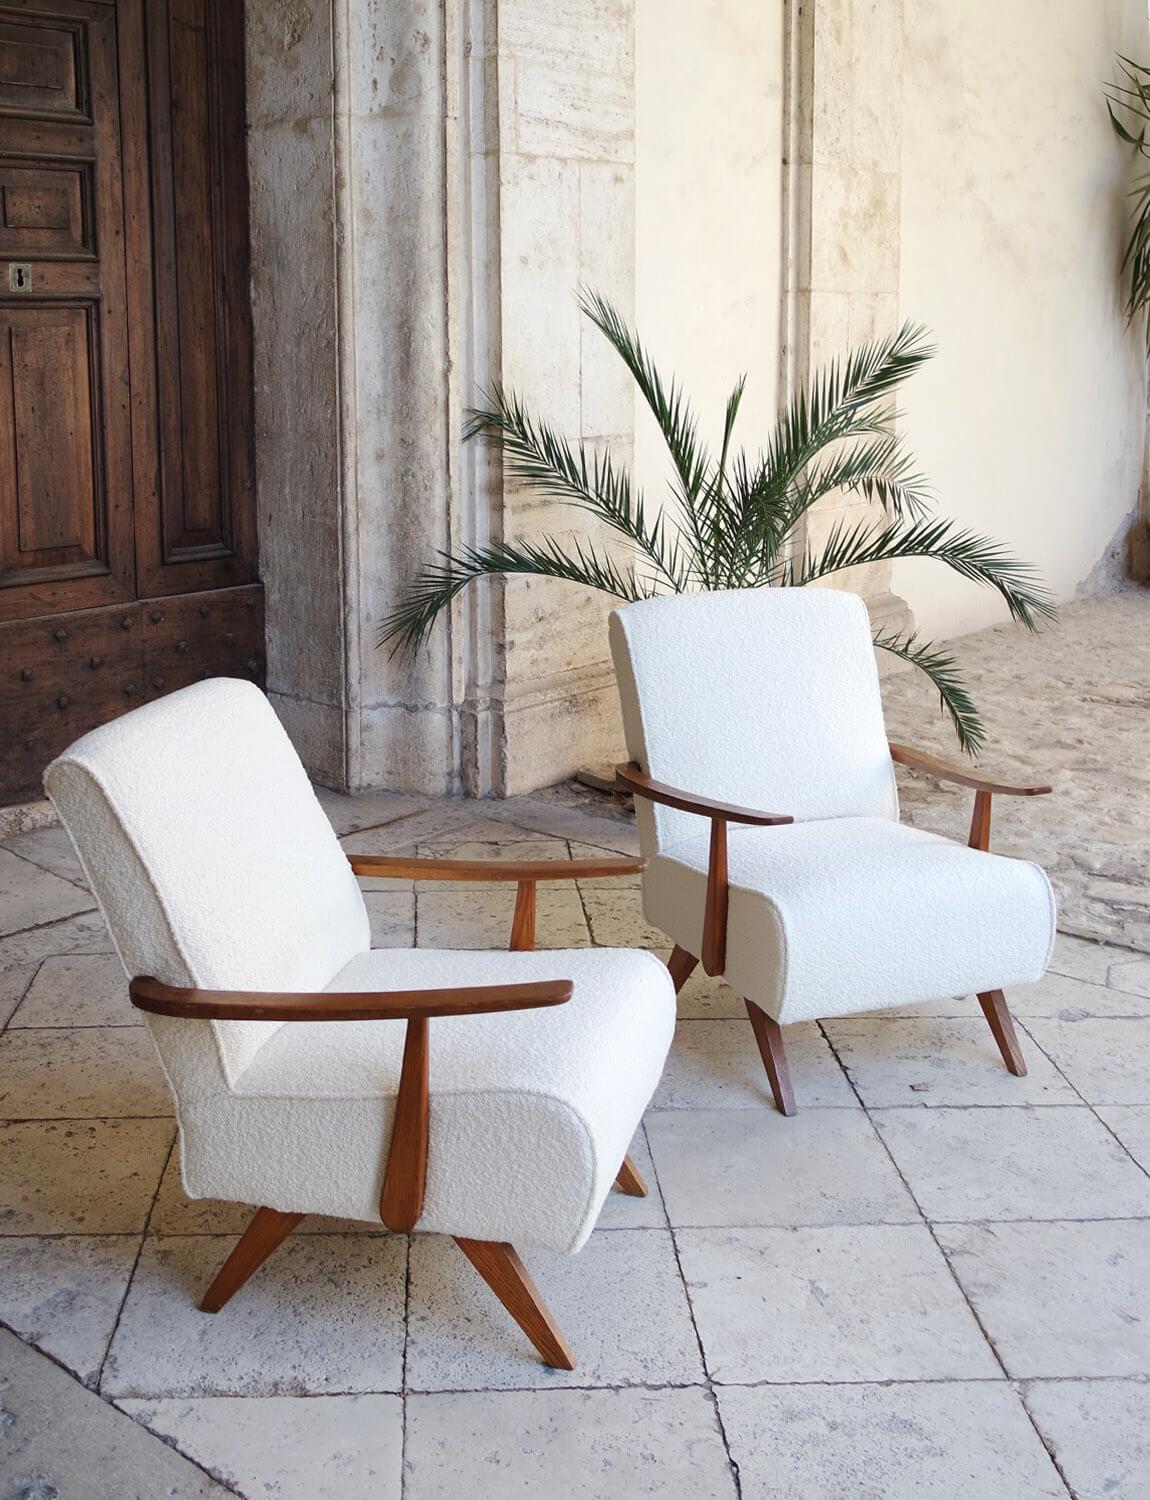 Paire de fauteuils des années 1970 avec structure en bois, retapissés dans un exceptionnel tissu Boucle crème de Dedar. Les chaises ont été restaurées et retapissées par Giorgio et Paolo ici en Ombrie en utilisant ce tissu milanais exceptionnel. Les